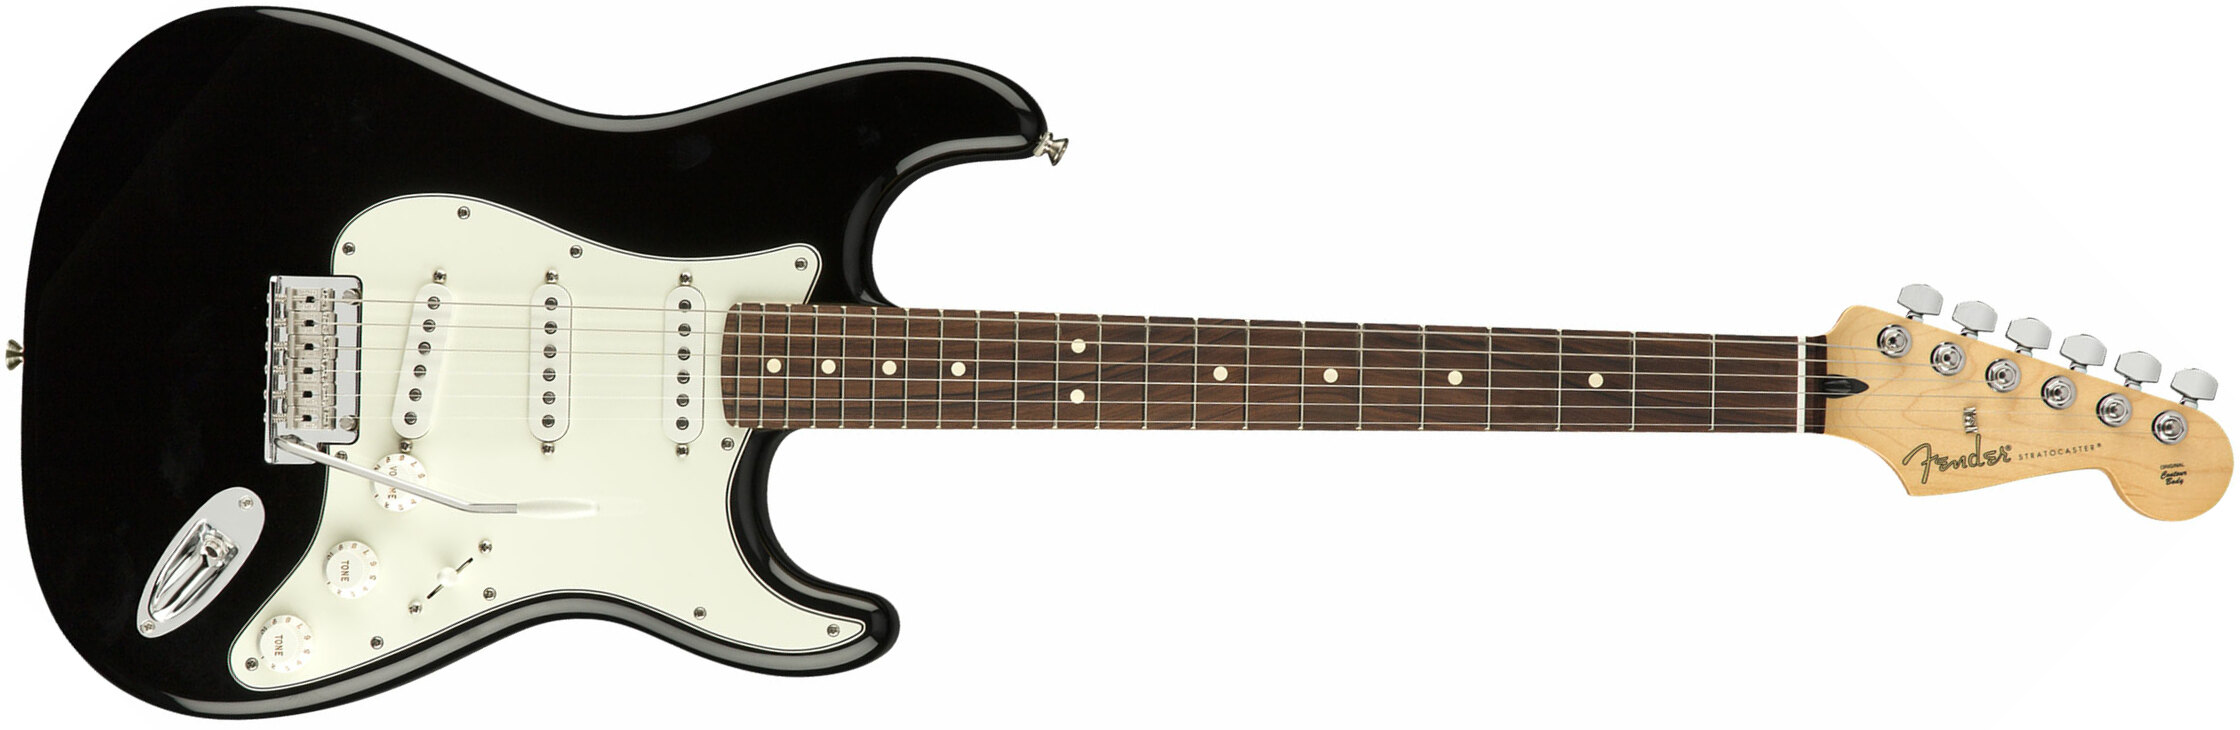 Fender Strat Player Mex Sss Pf - Black - Guitare Électrique Forme Str - Main picture